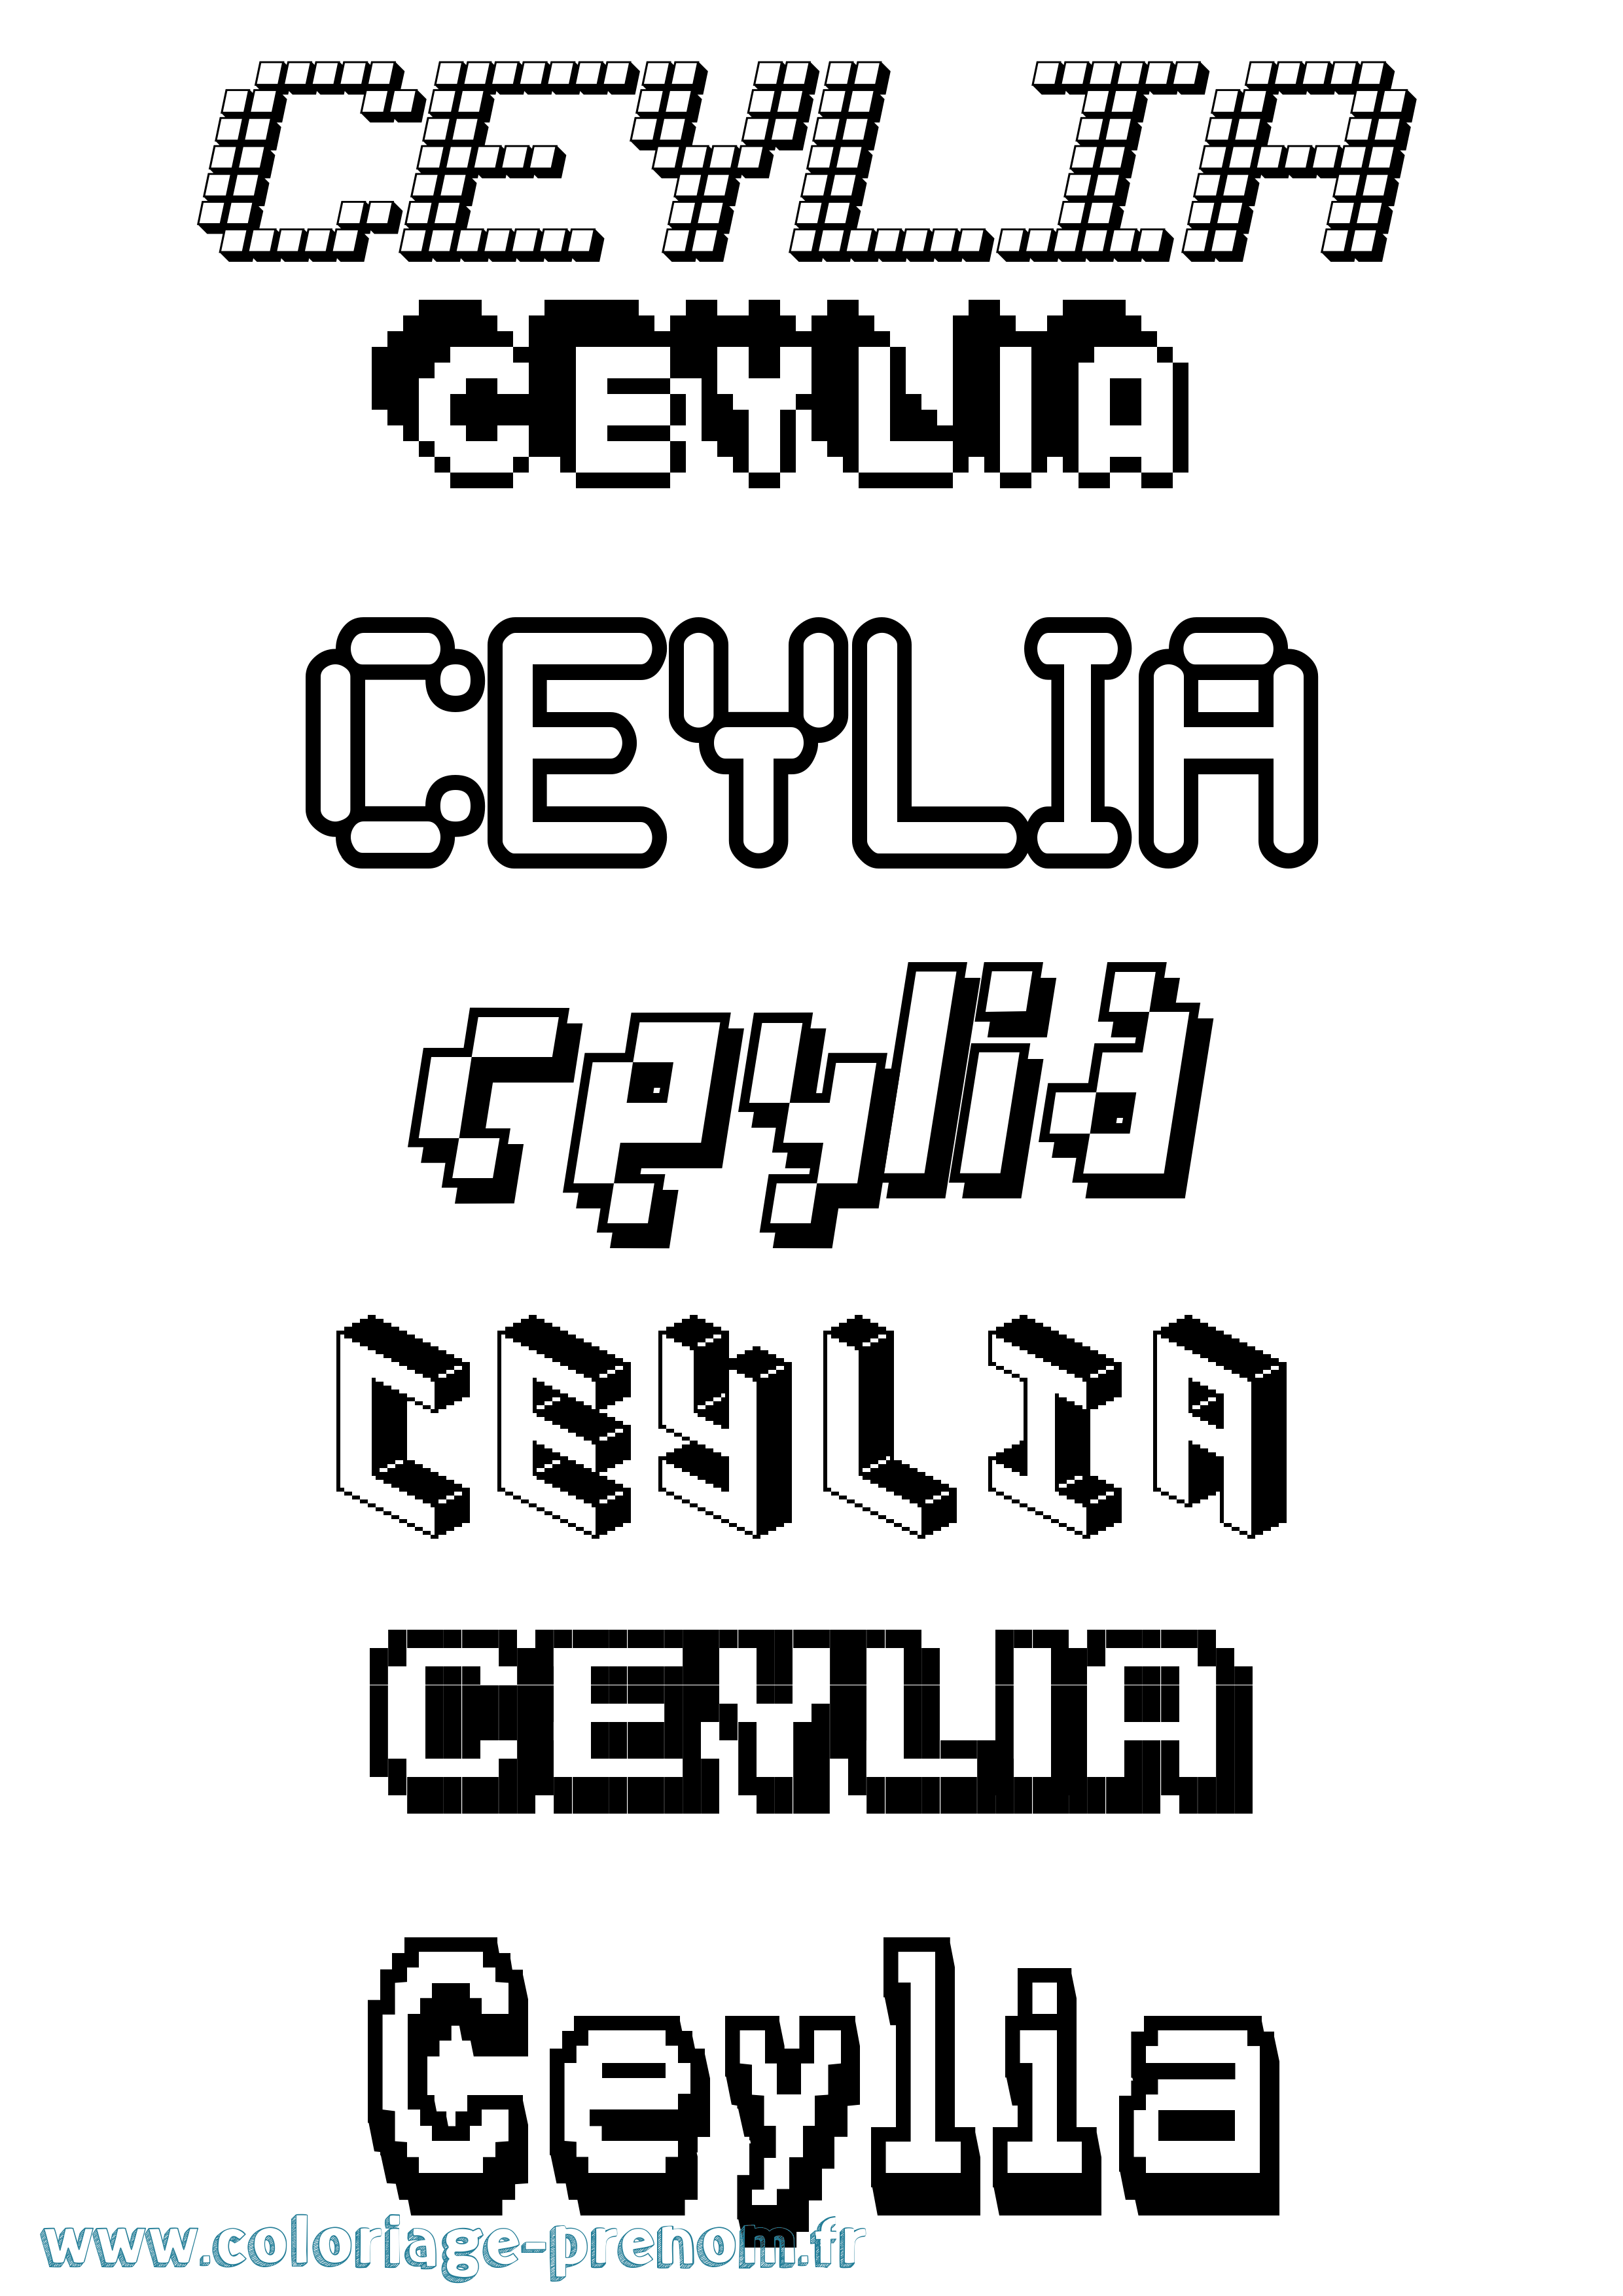 Coloriage prénom Ceylia Pixel